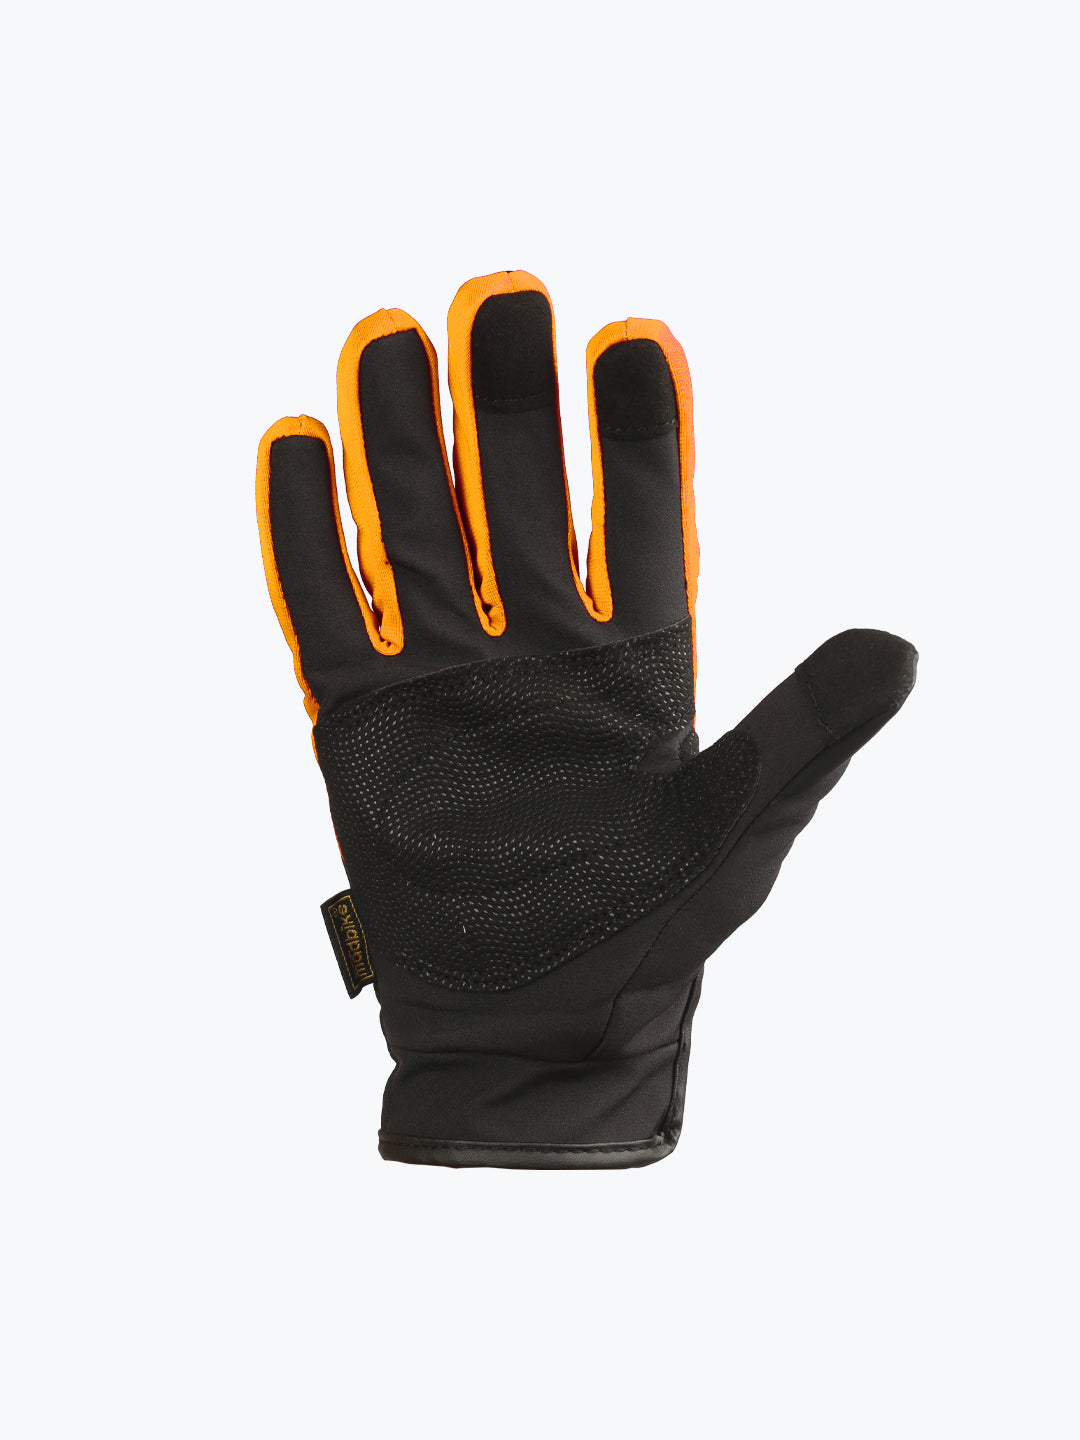 BSDDP City Gloves Touch Black & Orange